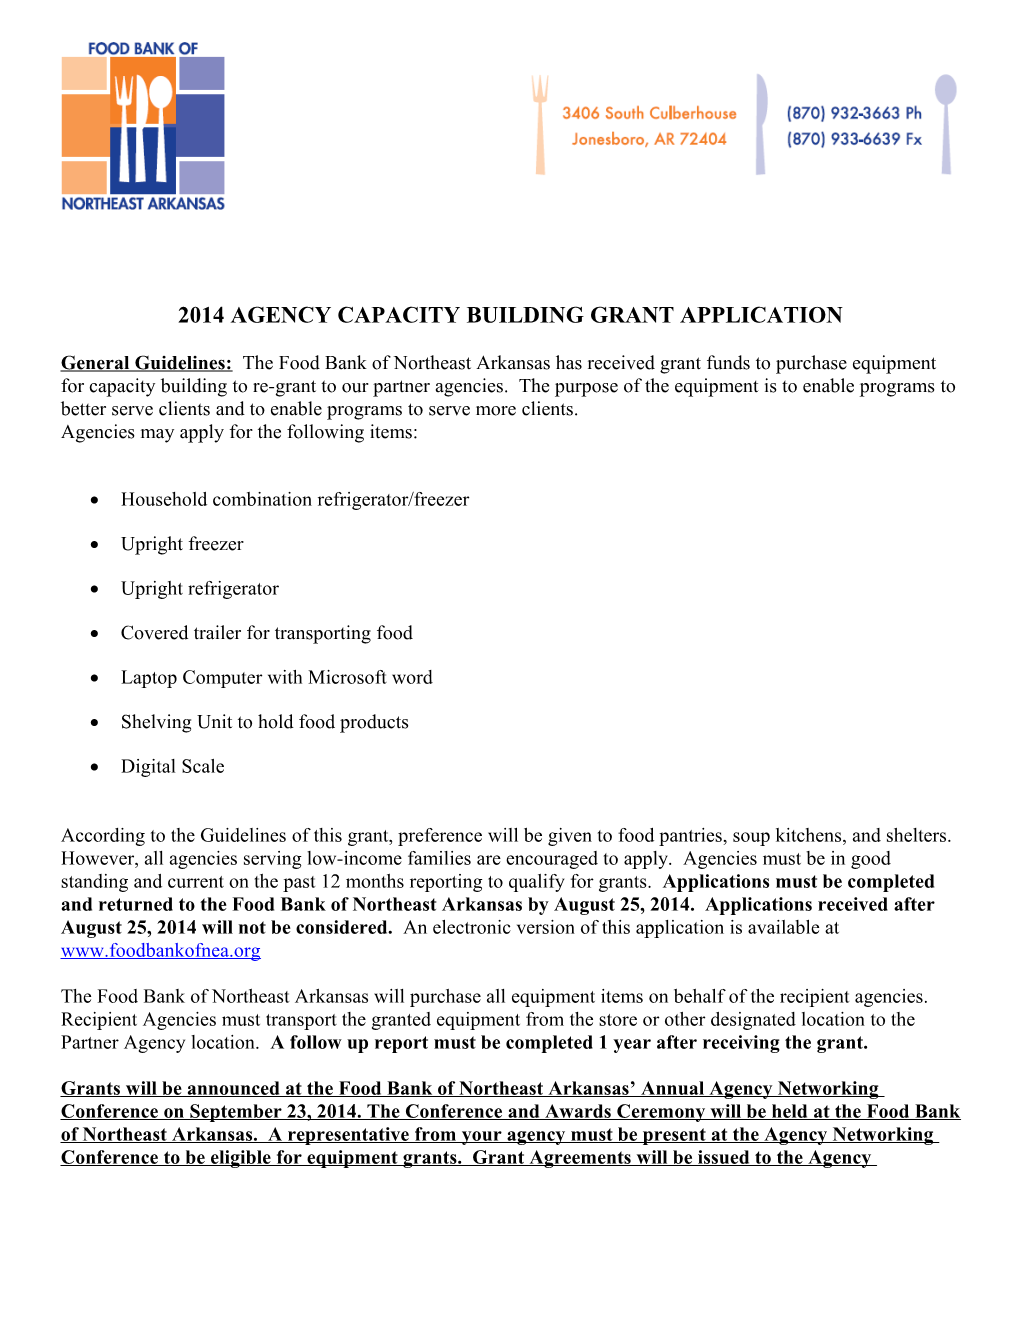 Arkansas Foodbank Network Grant Application